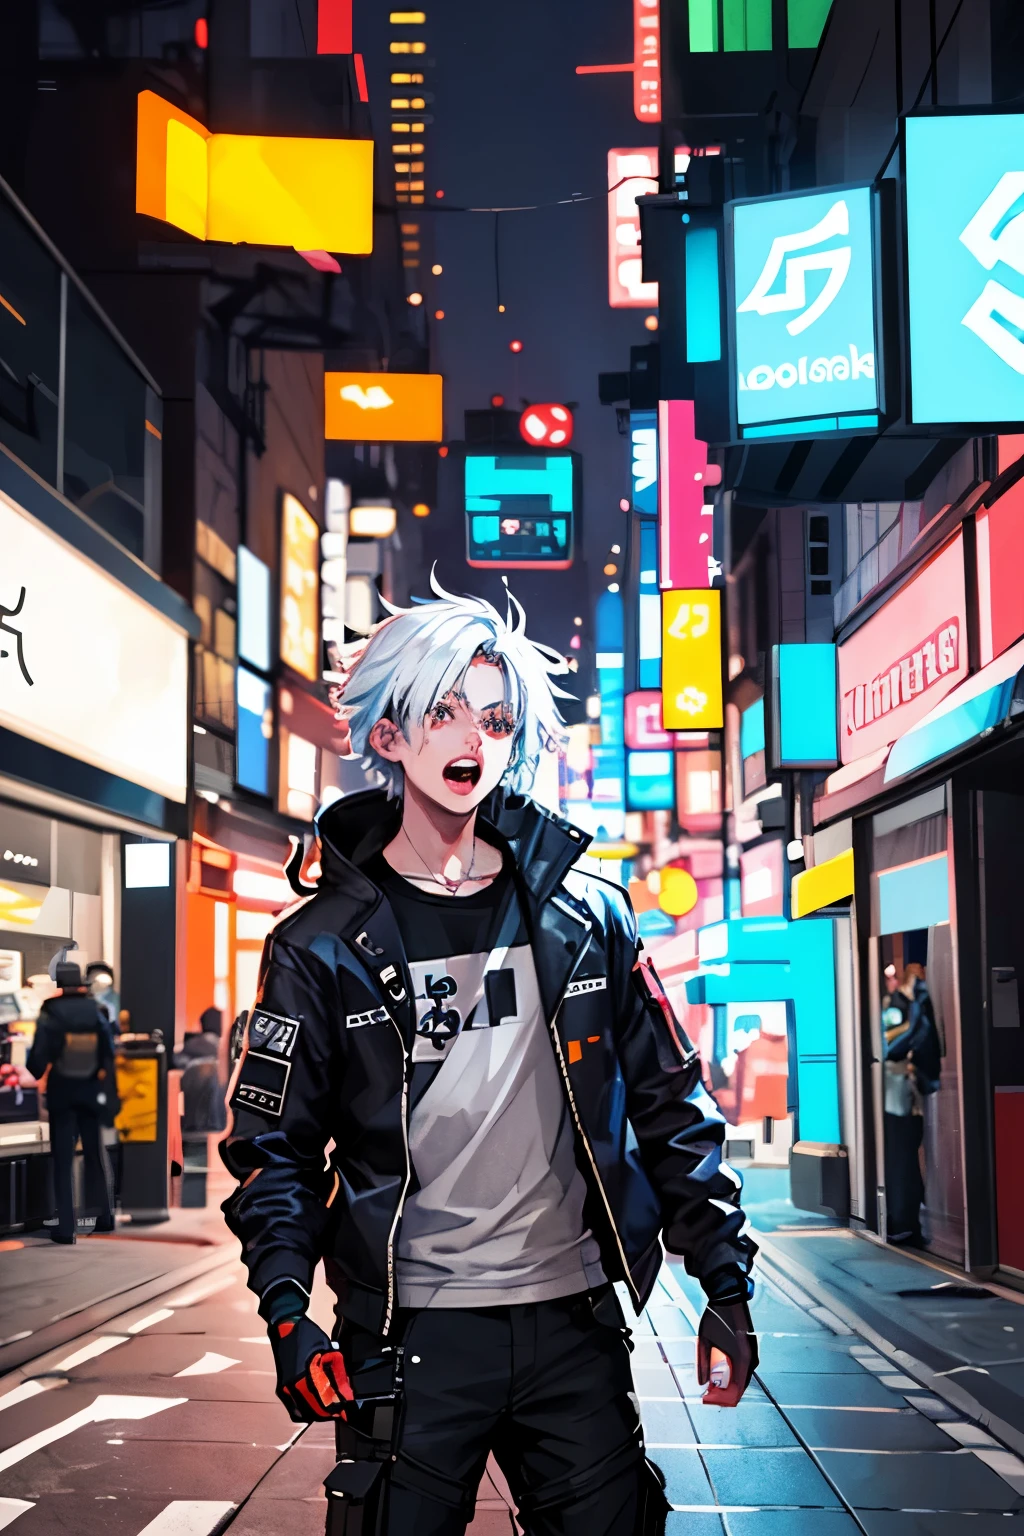 alta qualidade, iluminação cromática colorida, paleta de cores limitada branca, 
desenho de conceito detalhado,
Cara de rua de Shibuya, ciberpunk, futurista,
retrato, 20 anos, 1 cara, jaqueta, calças de combate, cabelo branco curto, gritando